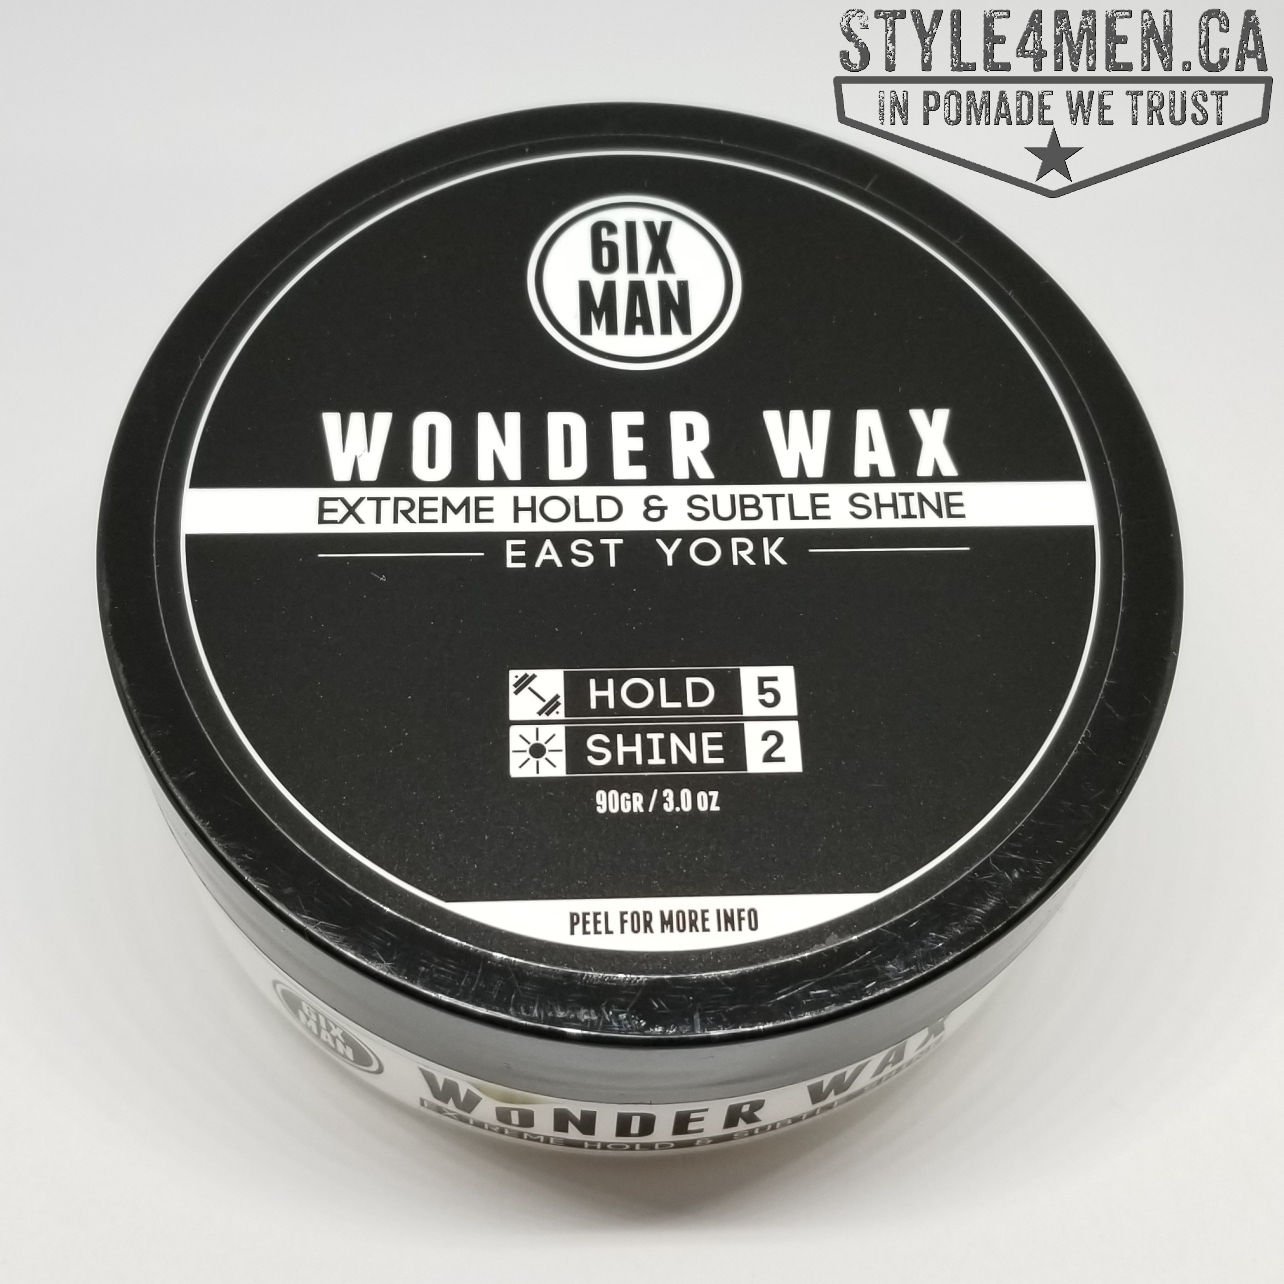 6IX MAN Wonder Wax – Wonderful